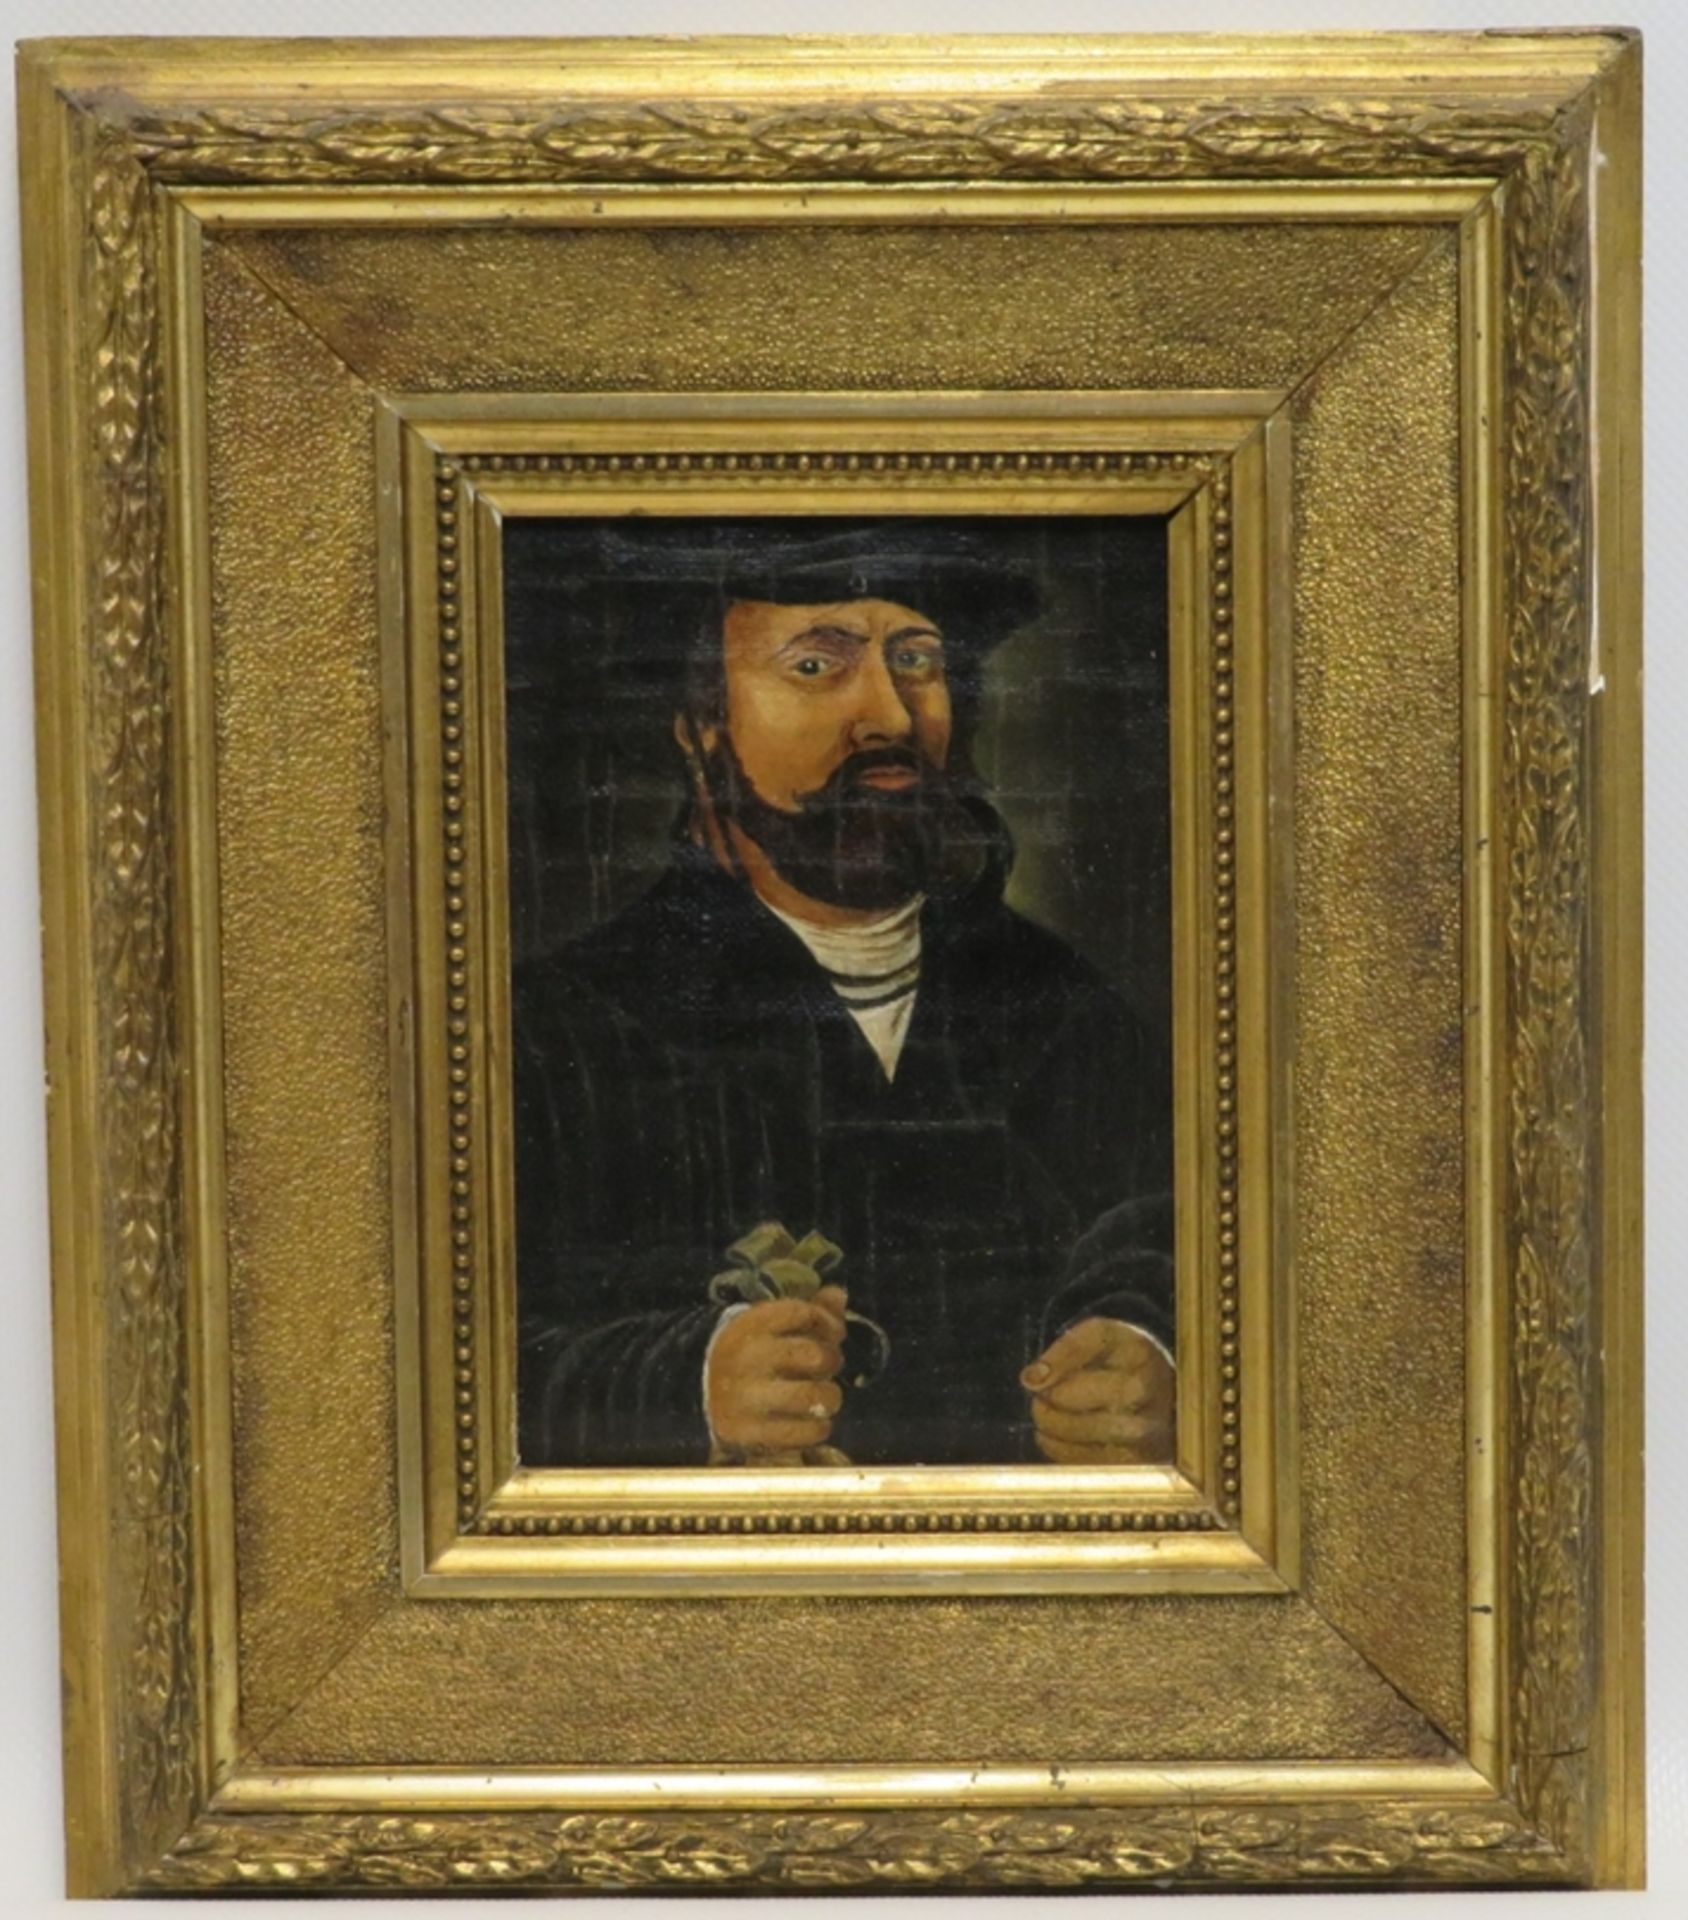 Unbekannt, um 1900, "Mittelalterliches Herrenporträt", Öl/Leinwand/Holz, 15,5 x